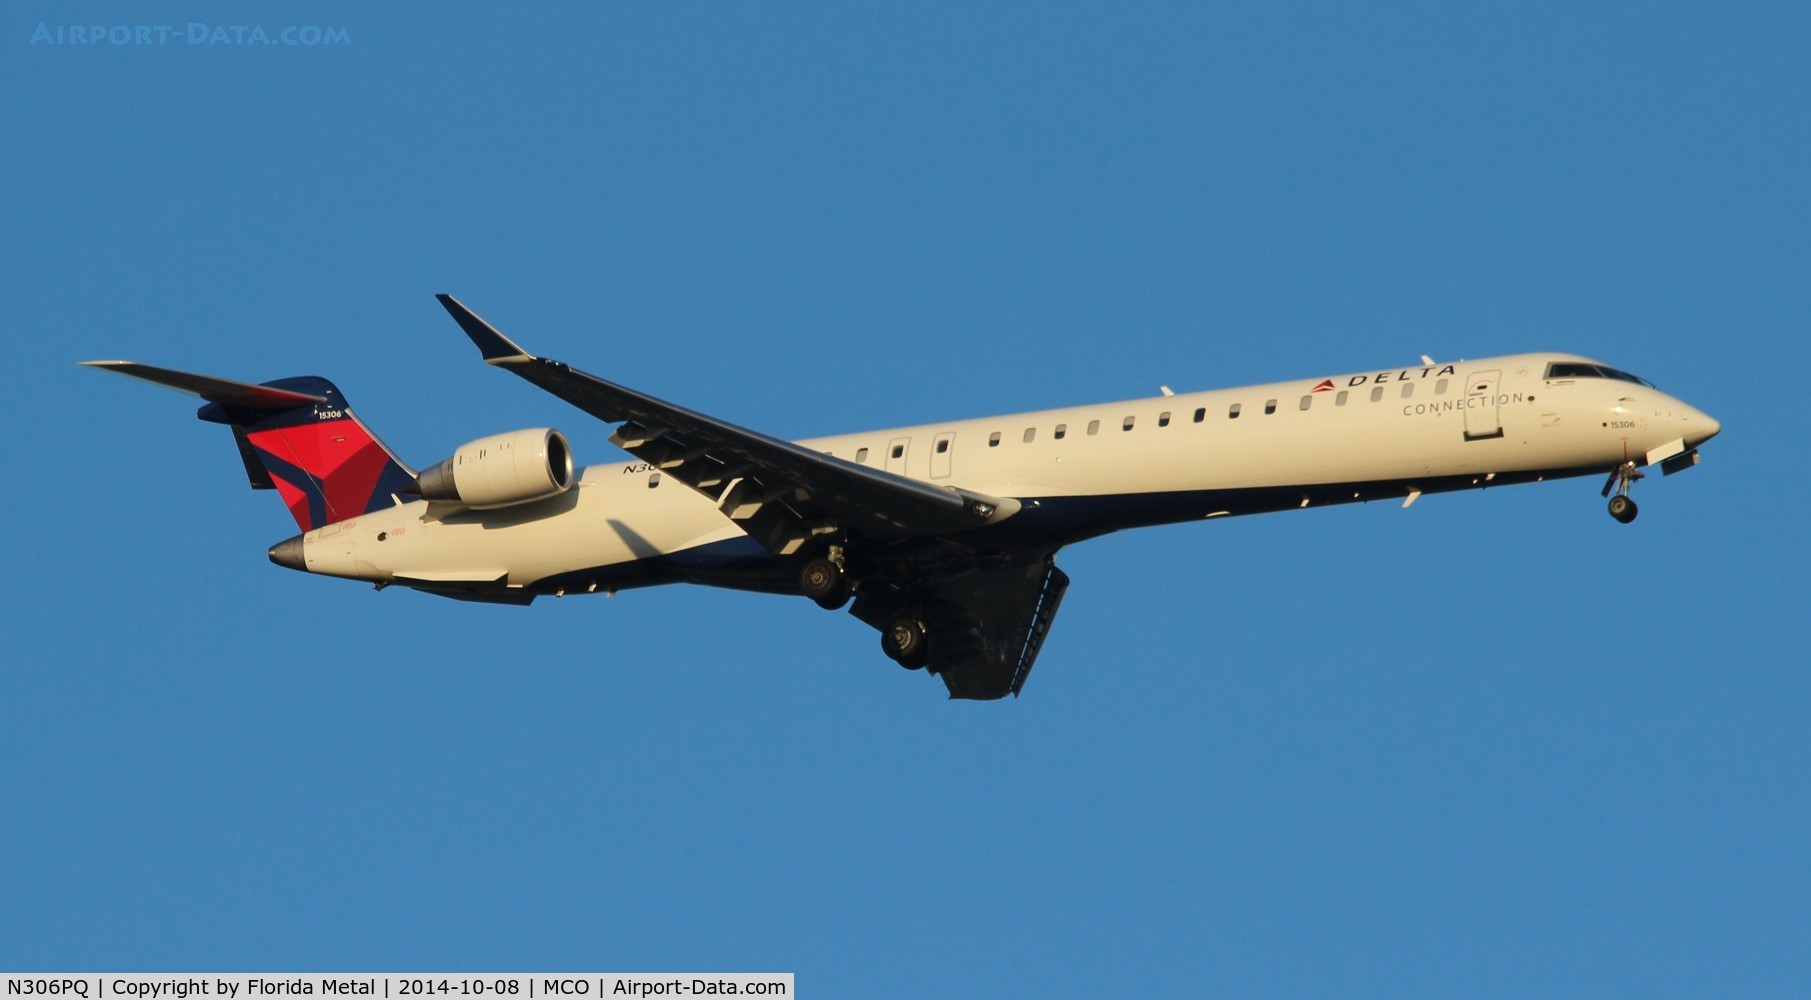 N306PQ, 2014 Bombardier CRJ-900LR (CL-600-2D24) C/N 15306, Delta Connection